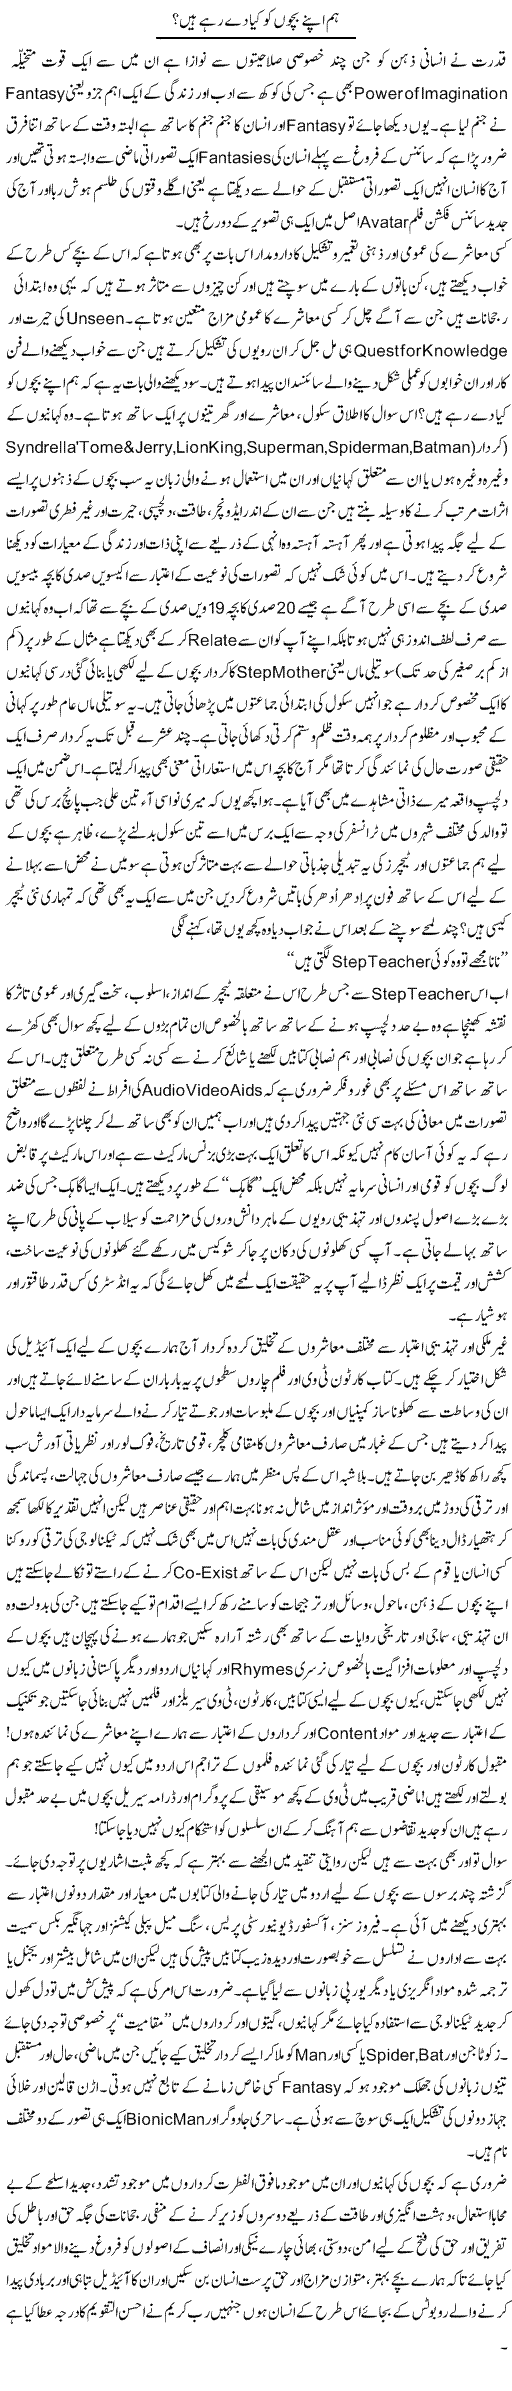 Hum Apne Bacho Ko Kia De Rahe Hain | Amjad Islam Amjad | Daily Urdu Columns